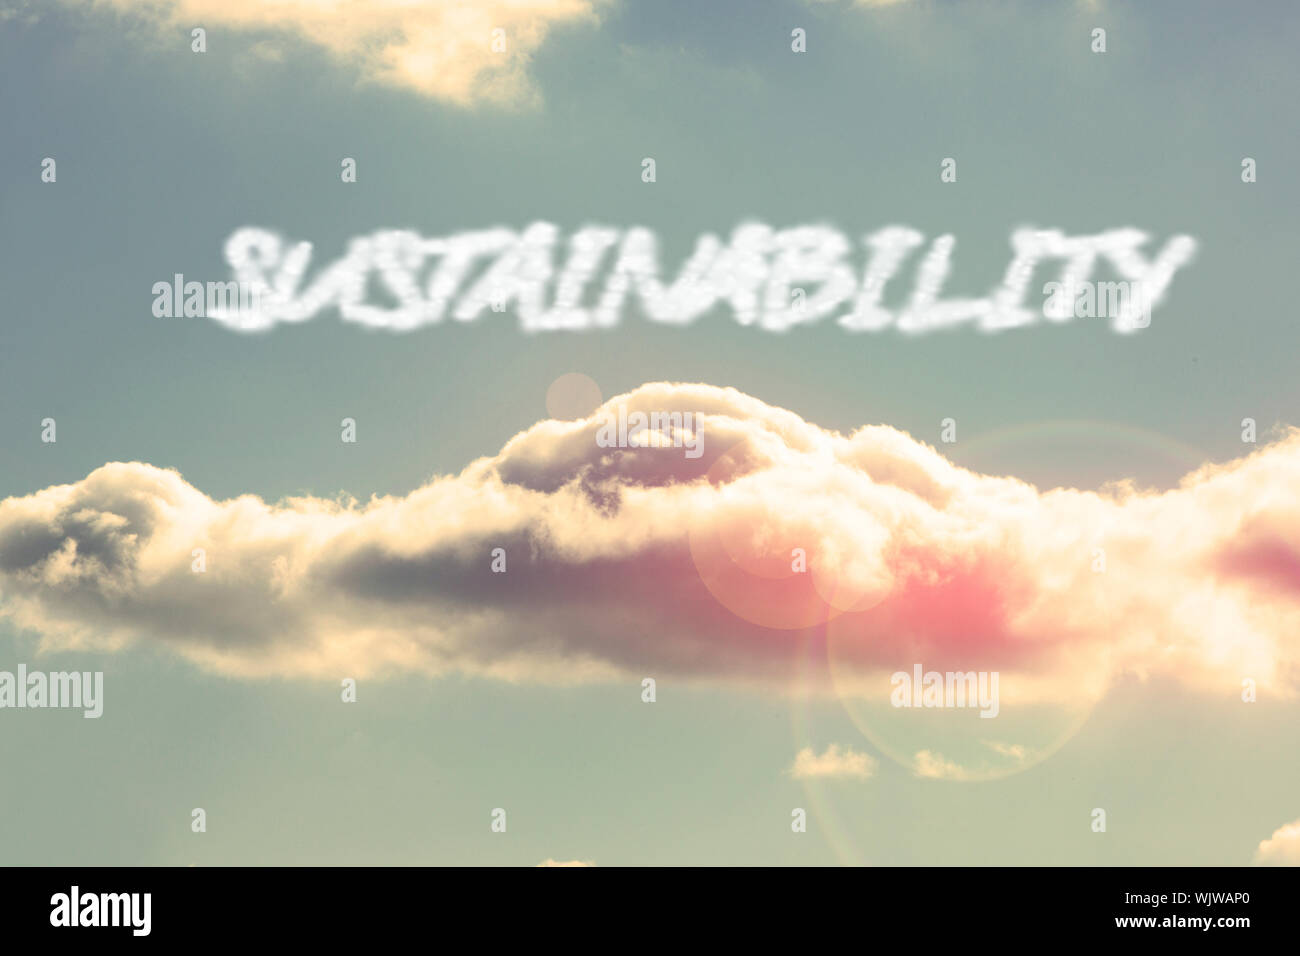 Das Wort Nachhaltigkeit gegen strahlend blauen Himmel mit Wolken Stockfoto